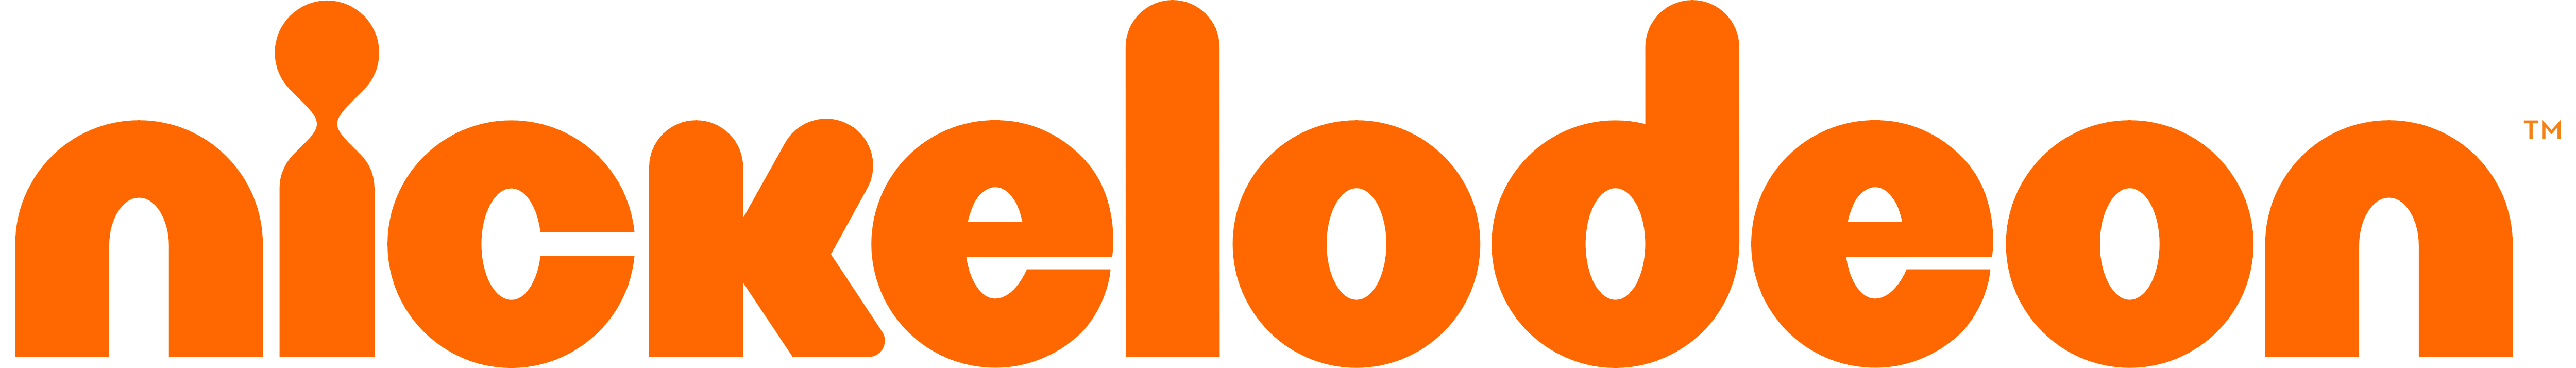 Orange Nickelodeon Logo - Nickelodeon Logo Png - Free Transparent PNG Logos